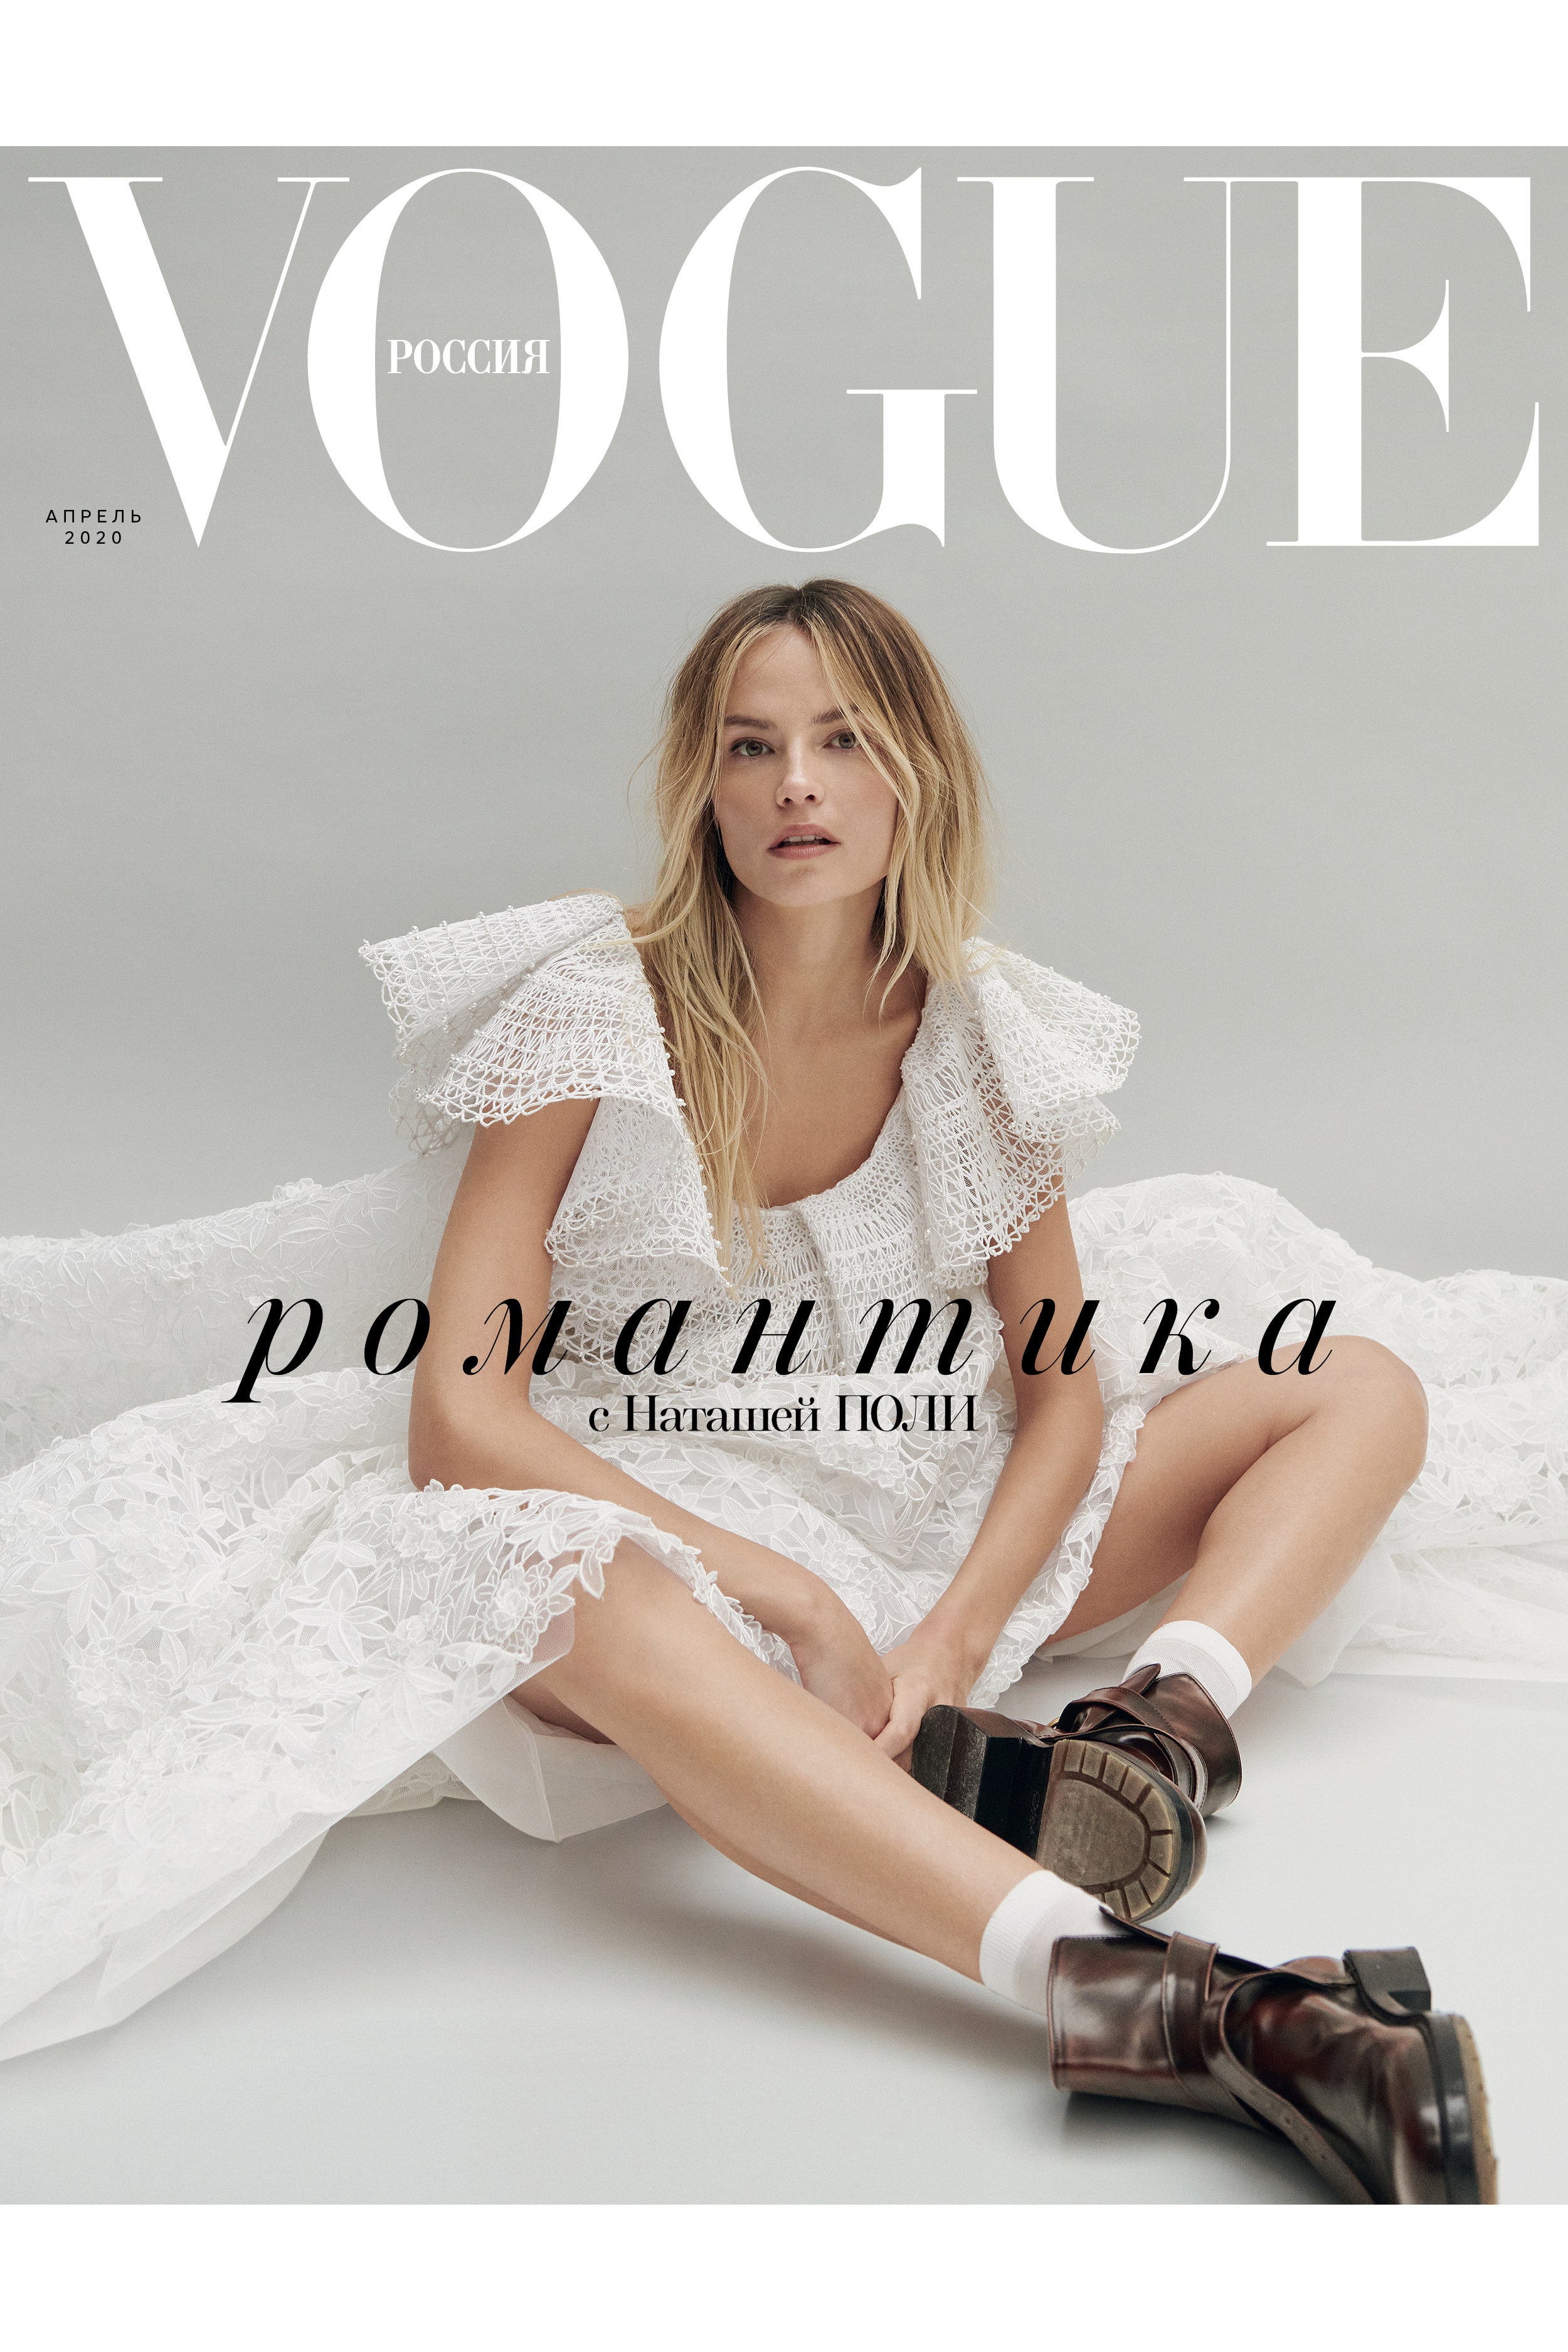 Маша Федорова об апрельском номере Vogue